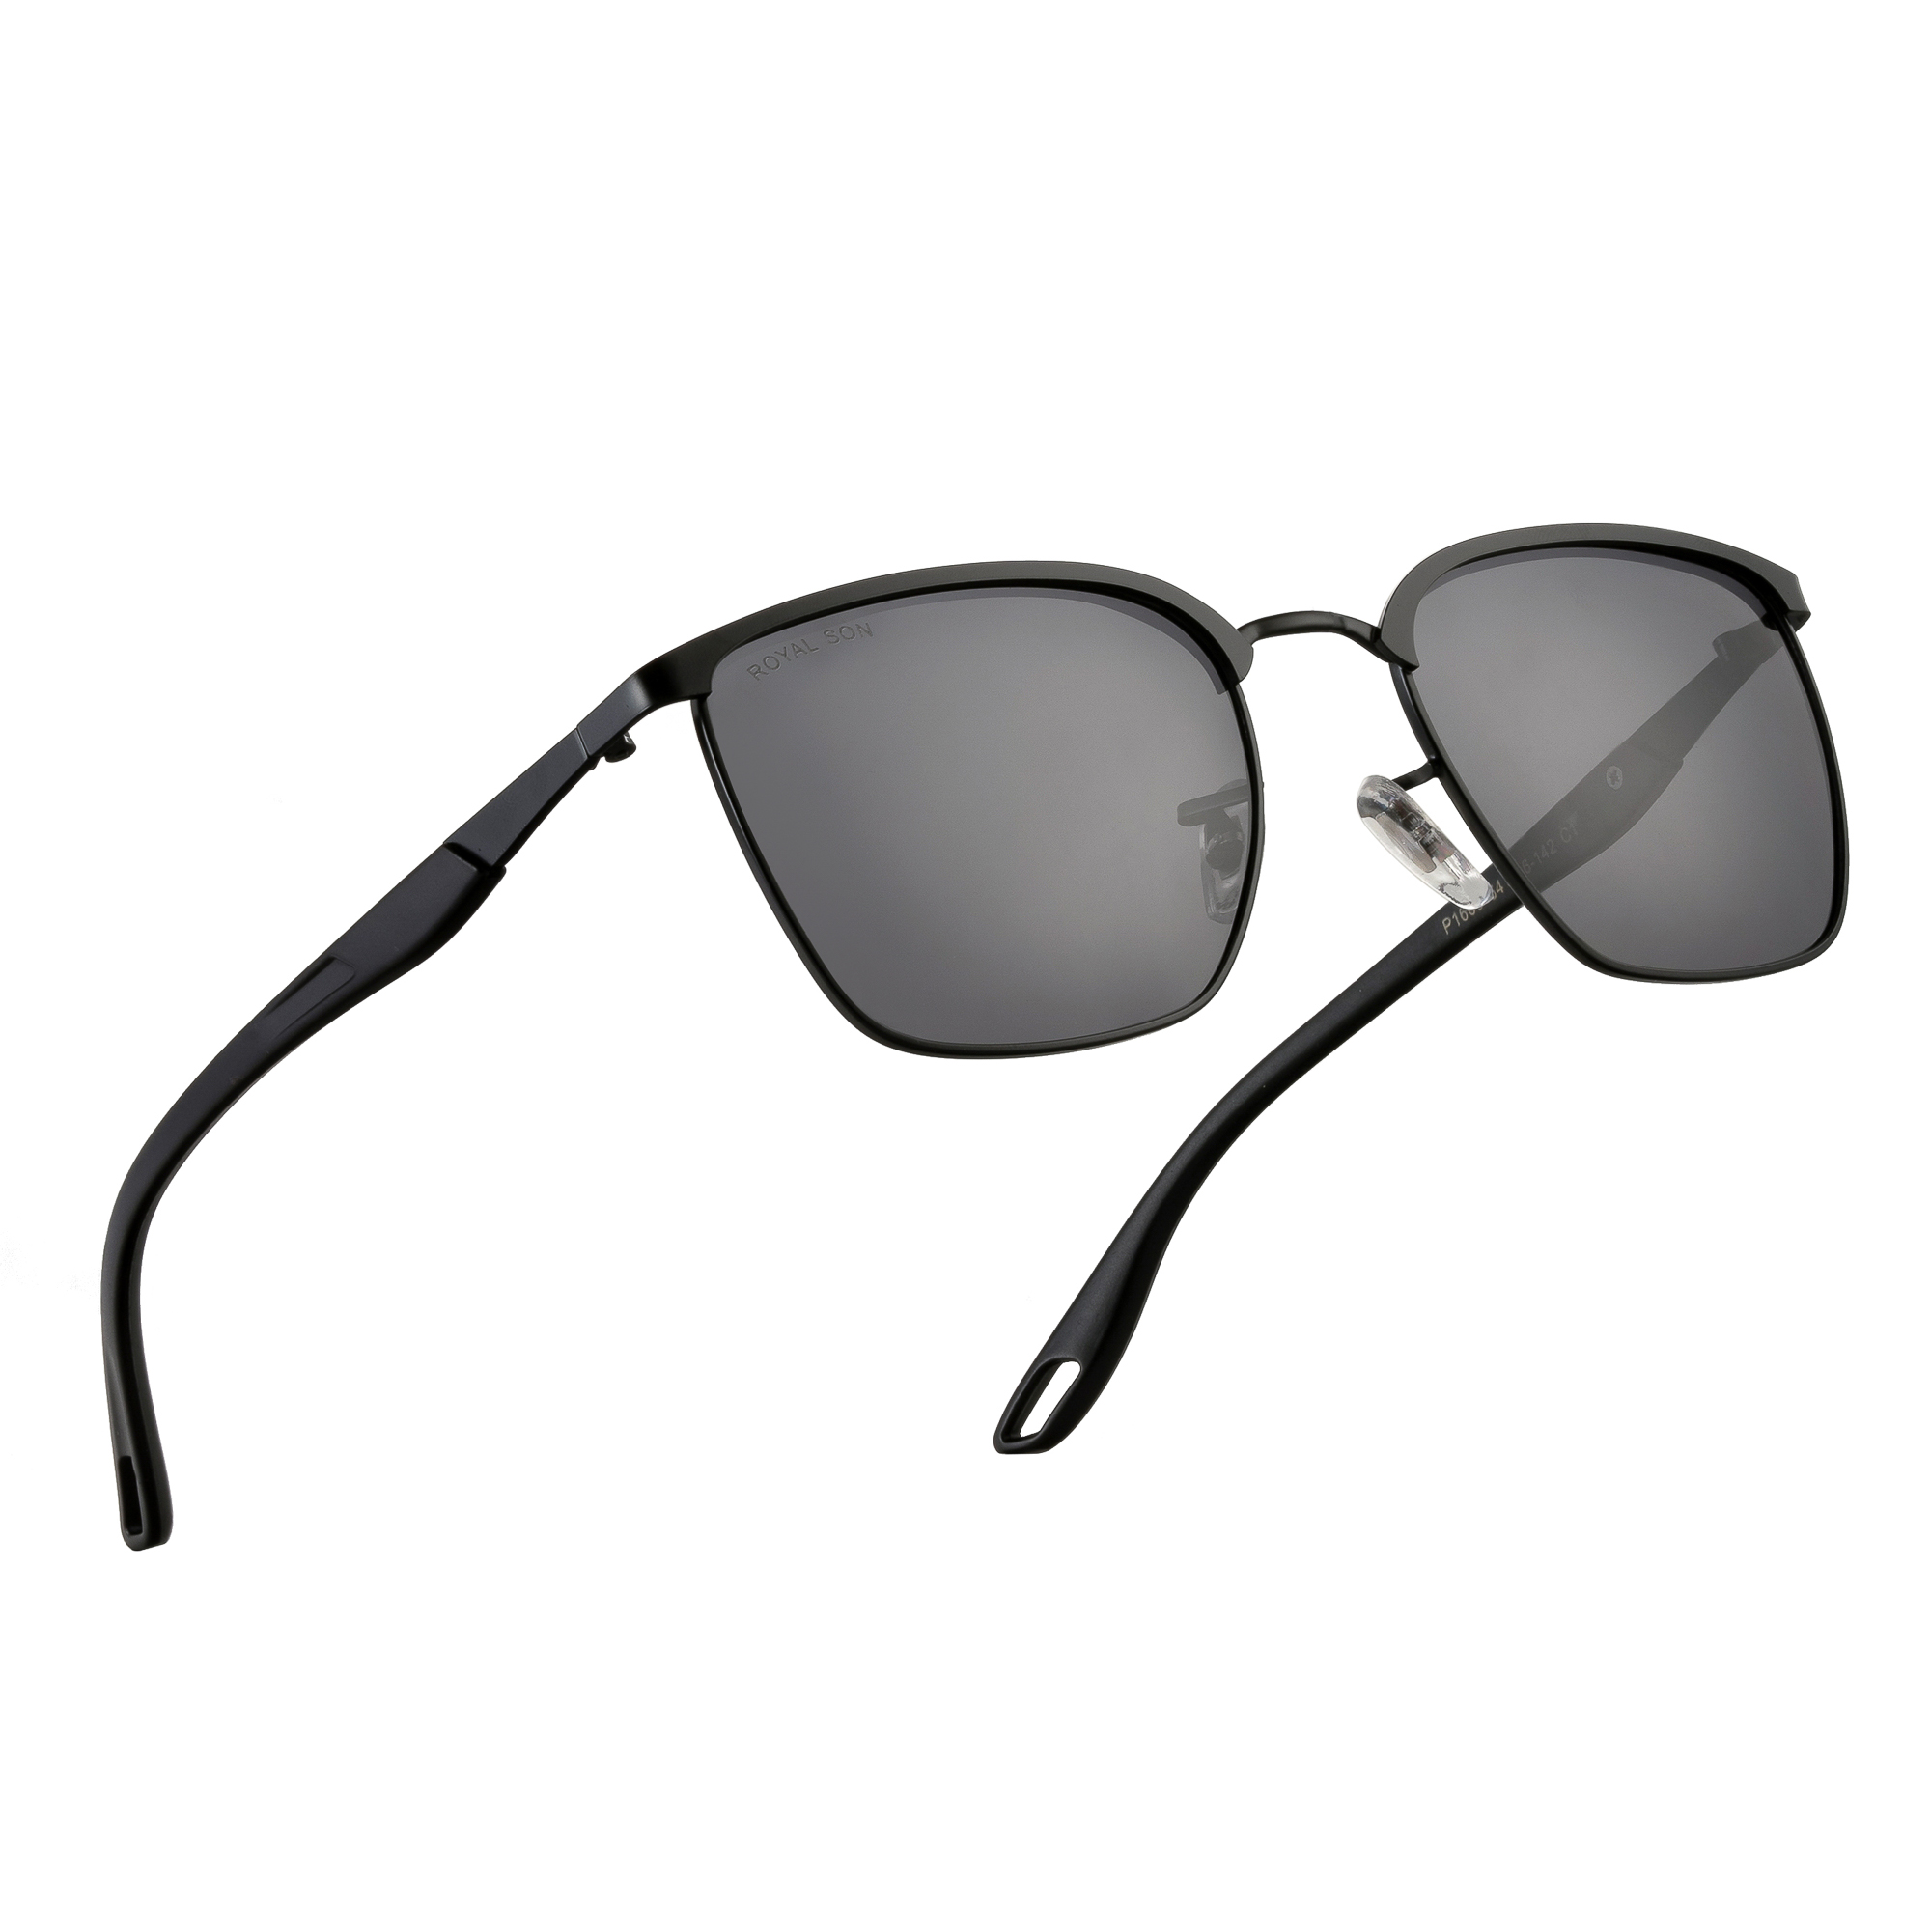 RayBan New Model Sunglasses 4 | MA Fashion ( Since 2014 )